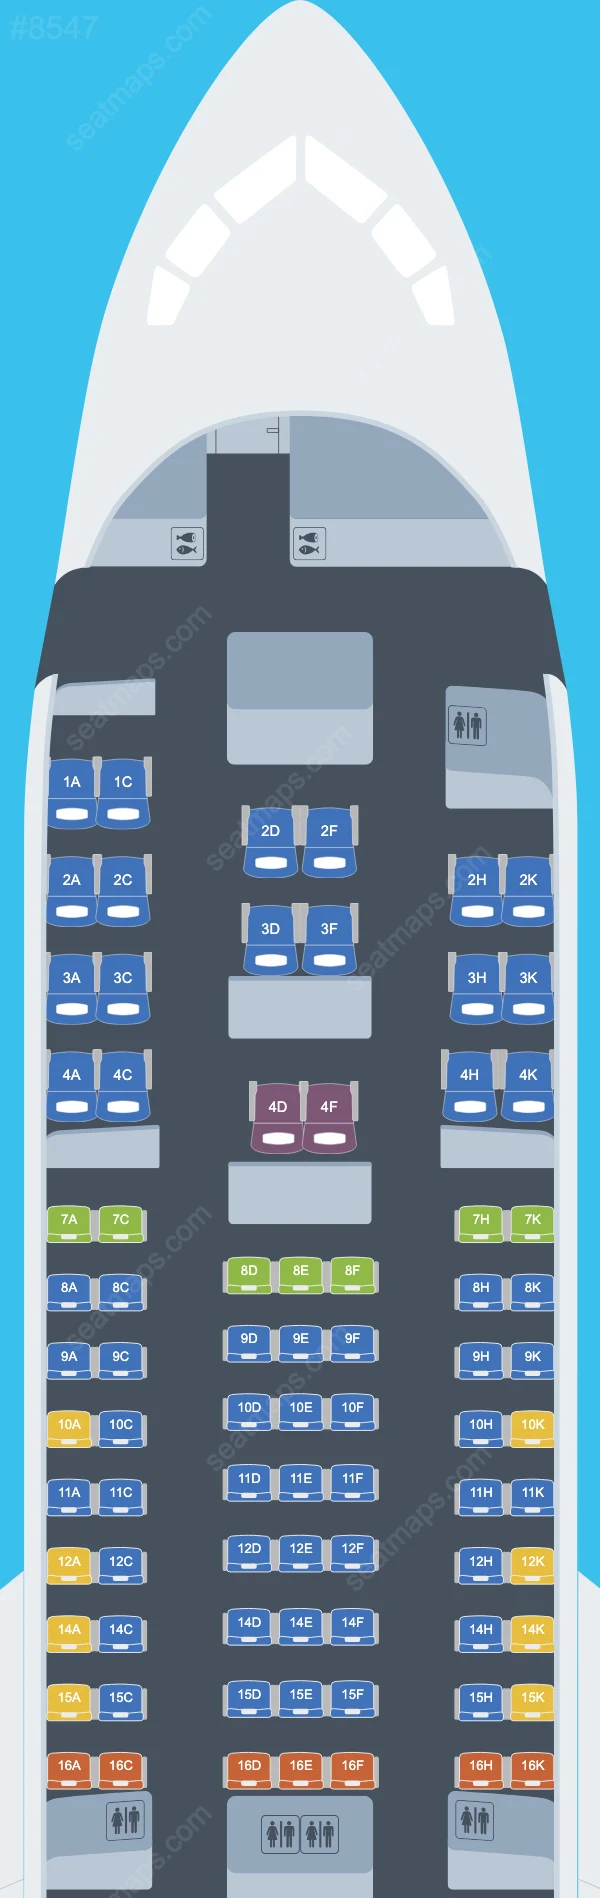 Omni Air International Boeing 767 Plan de Salle 767-200 ER V.1